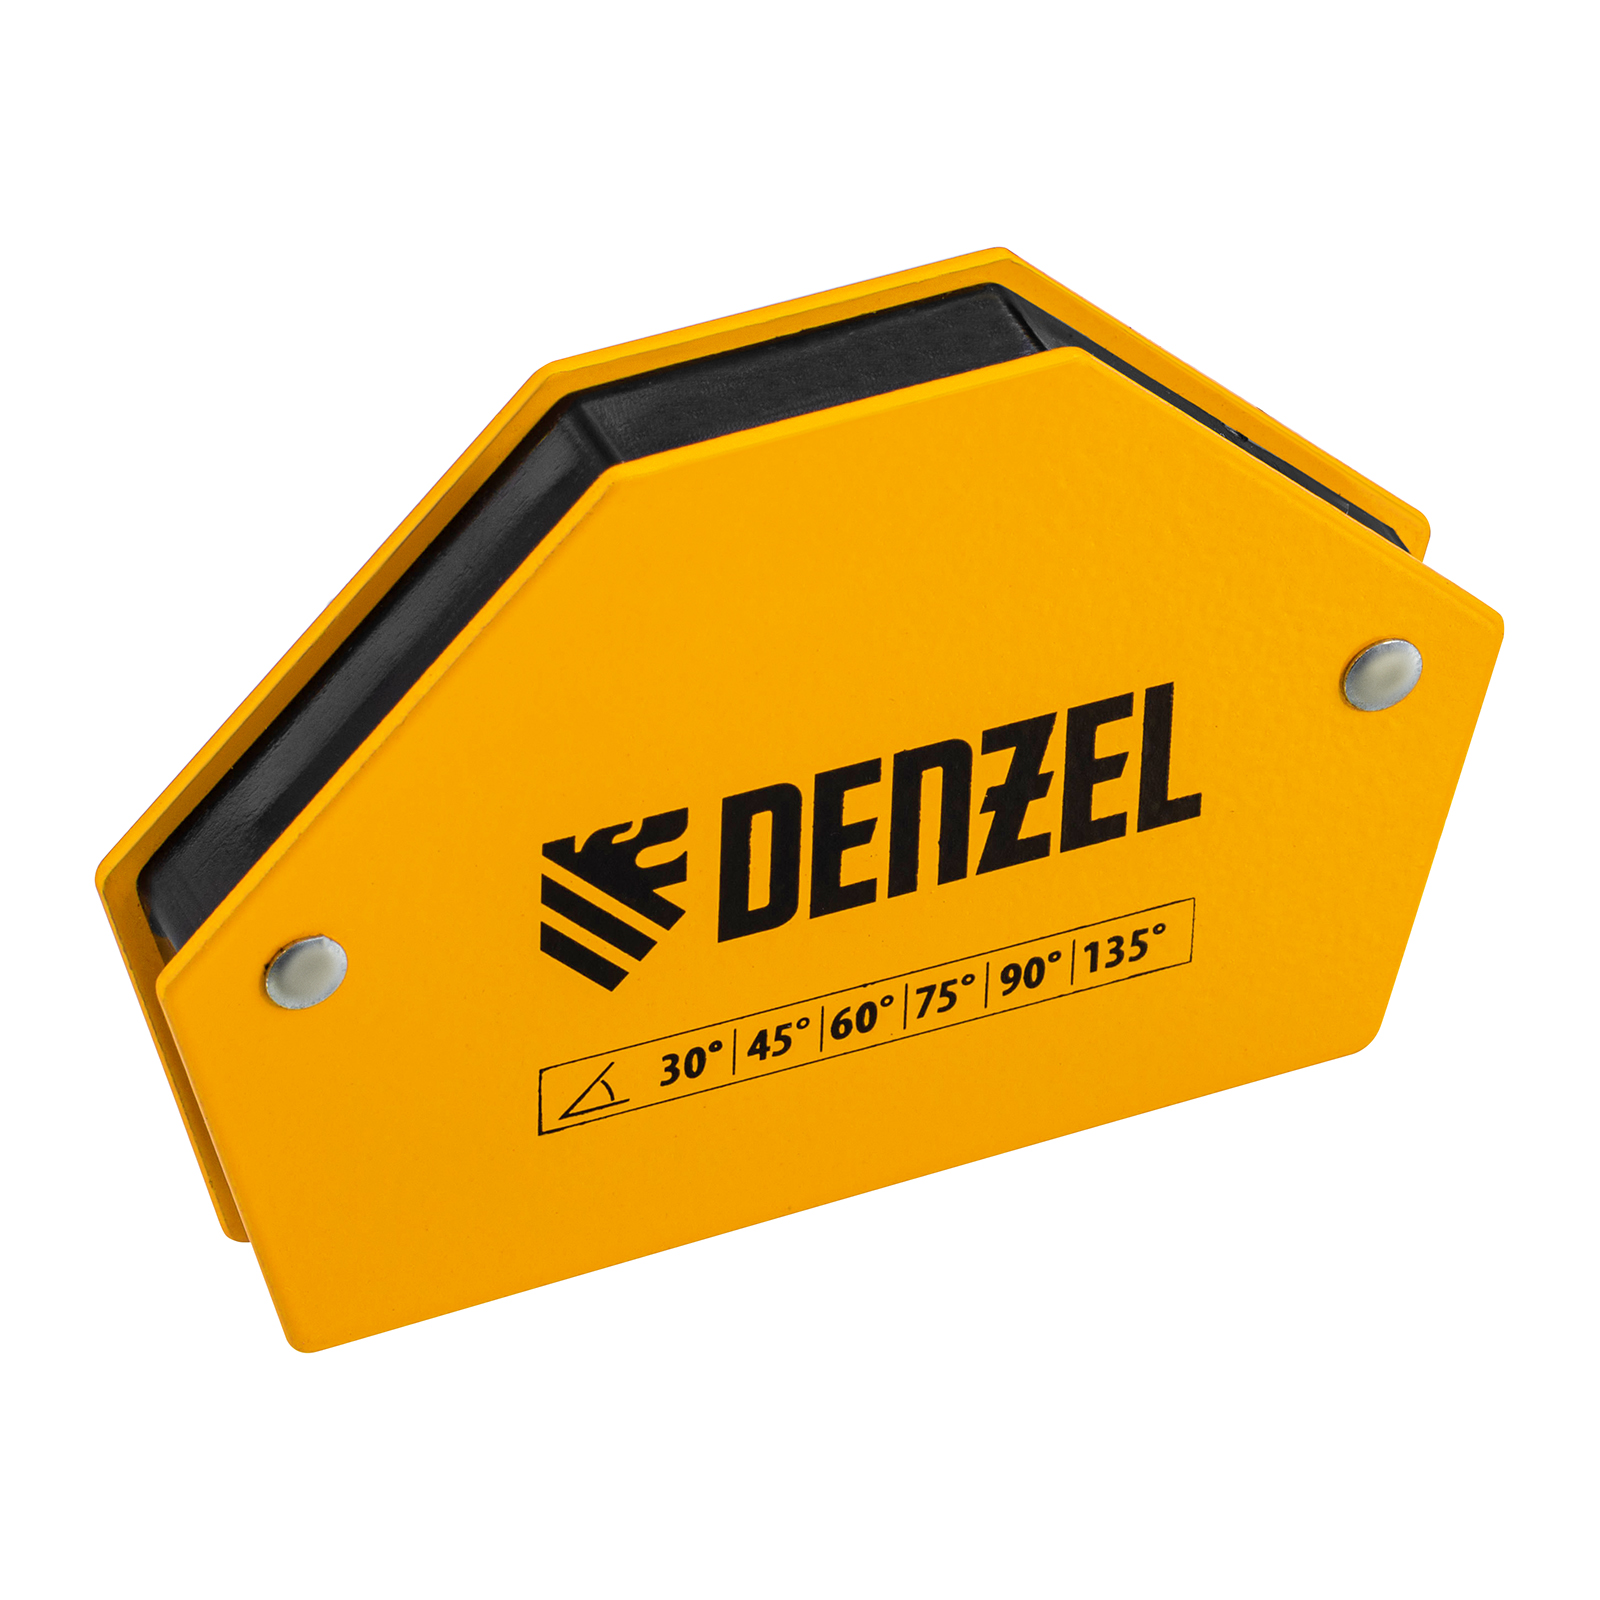 Фиксатор магнитный для сварочных работ DENZEL усилие 25 LB, 30х45х60х75х90х135 град. 97552 фиксатор магнитный птк